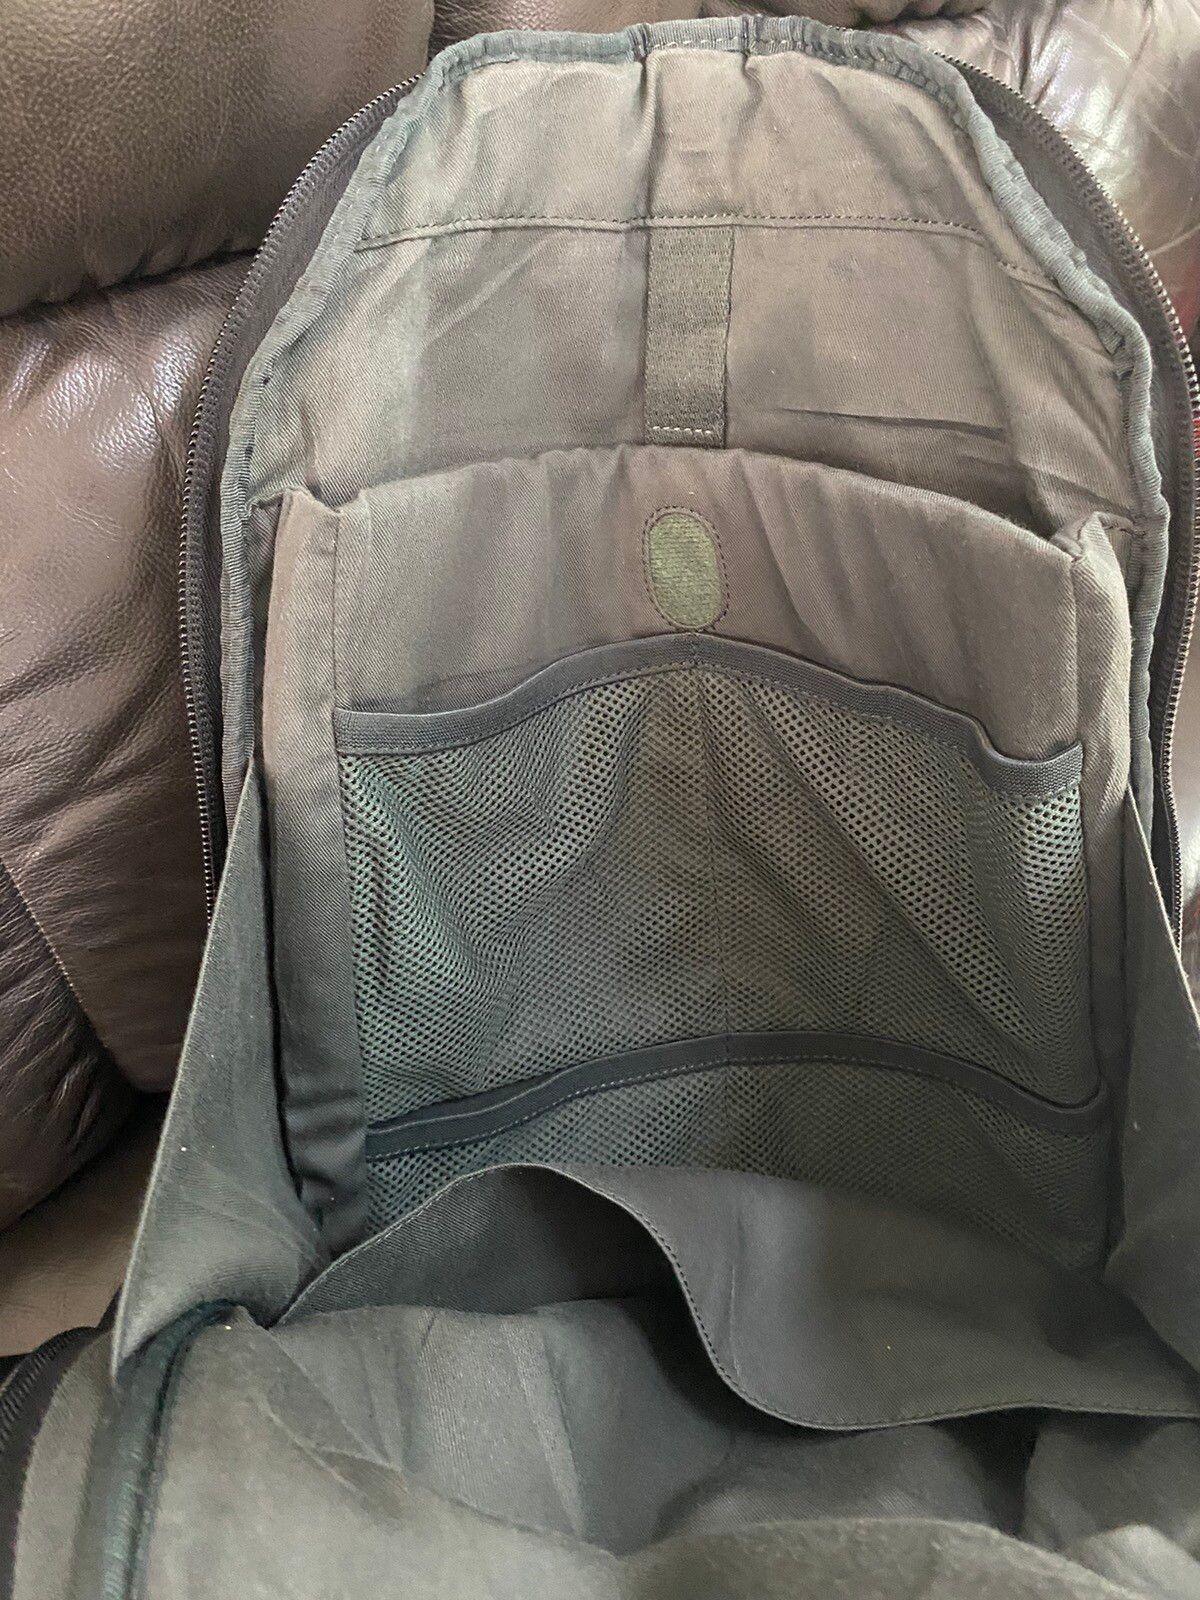 Cote&Ciel - Authentic Cote & Ciel Unique Travel Laptop Backpack - 22